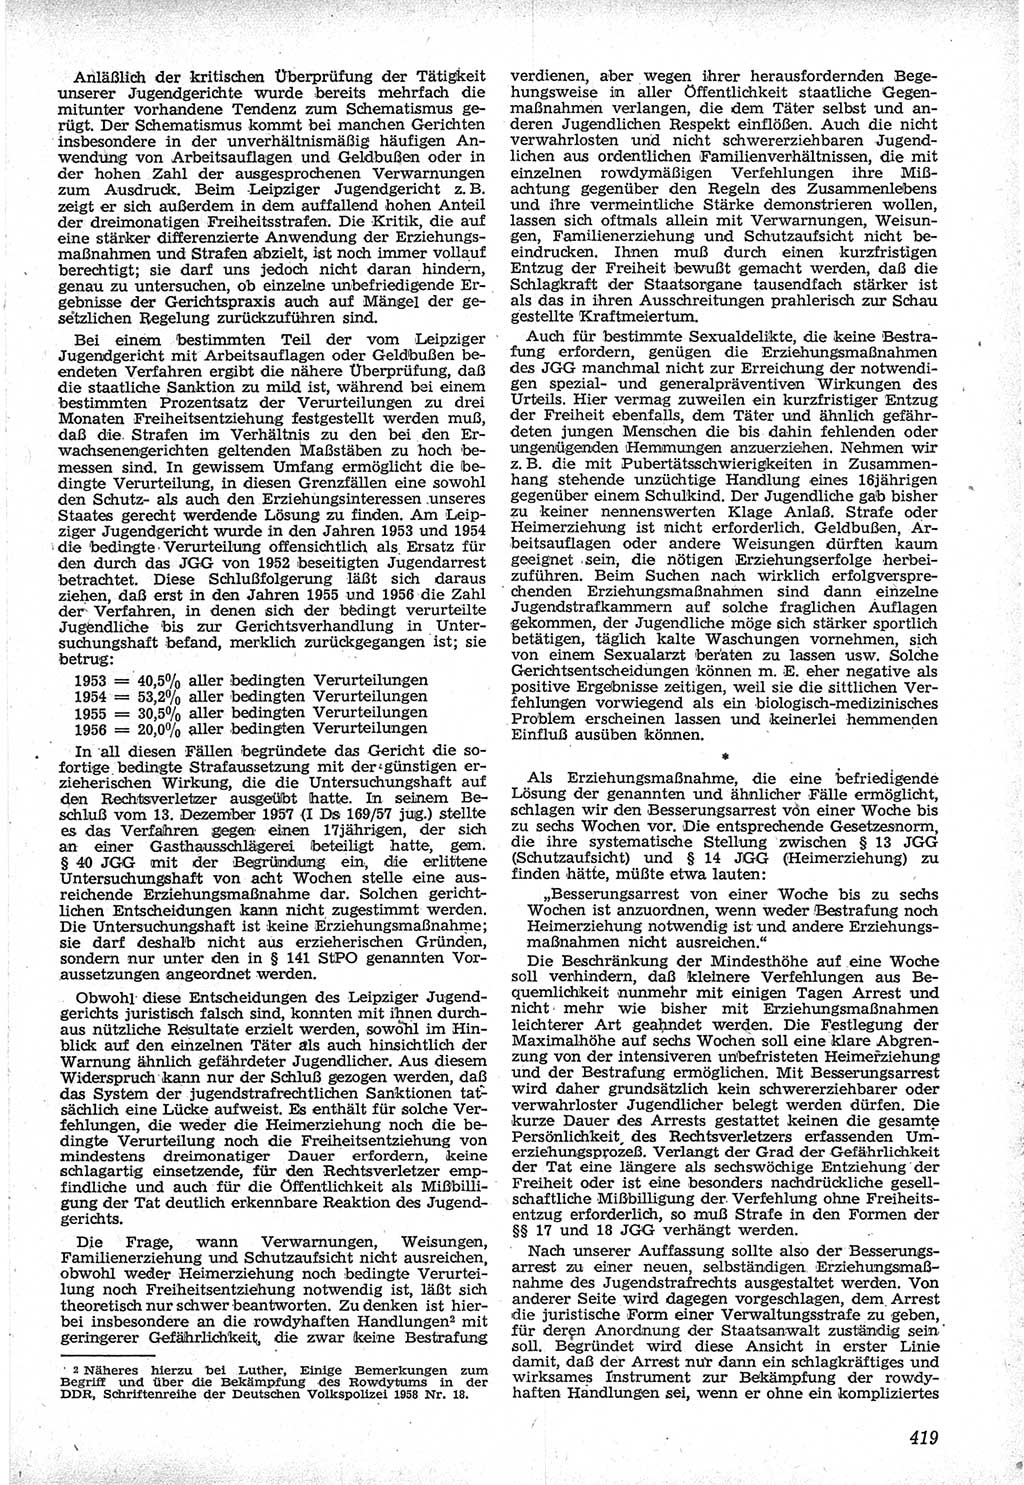 Neue Justiz (NJ), Zeitschrift für Recht und Rechtswissenschaft [Deutsche Demokratische Republik (DDR)], 12. Jahrgang 1958, Seite 419 (NJ DDR 1958, S. 419)